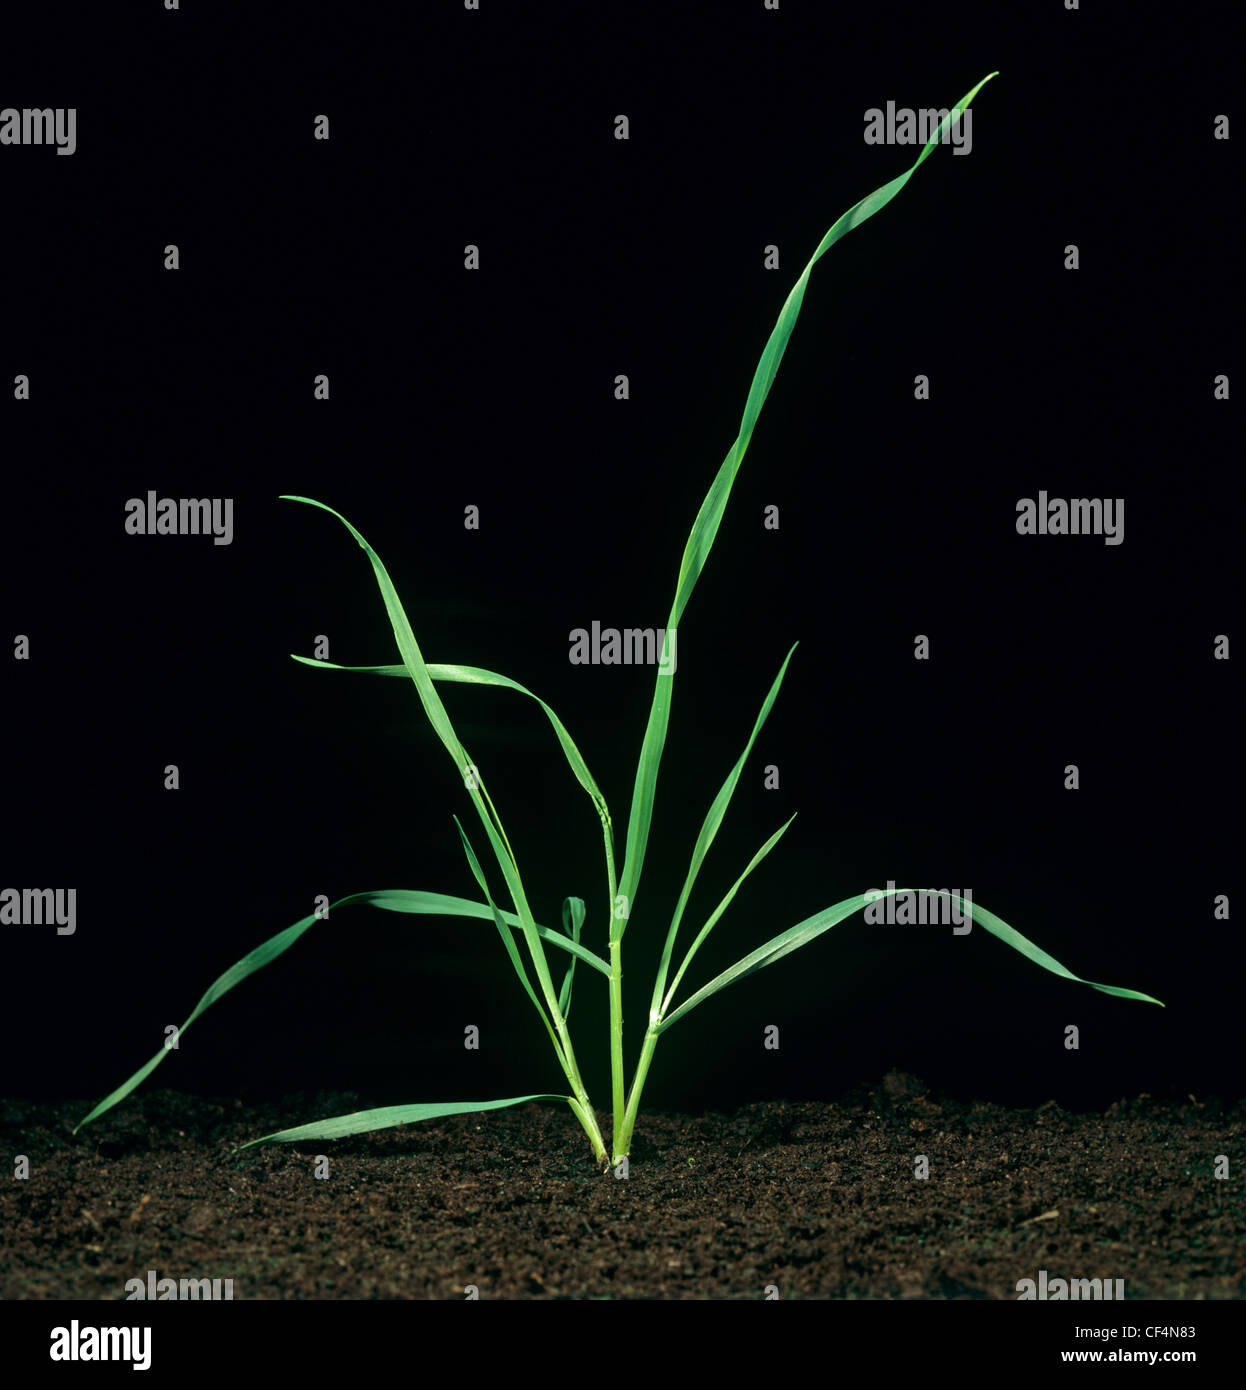 Jungen Weizen Pflanzen Bestockung und Wachstum Stufe 30 Stockfoto